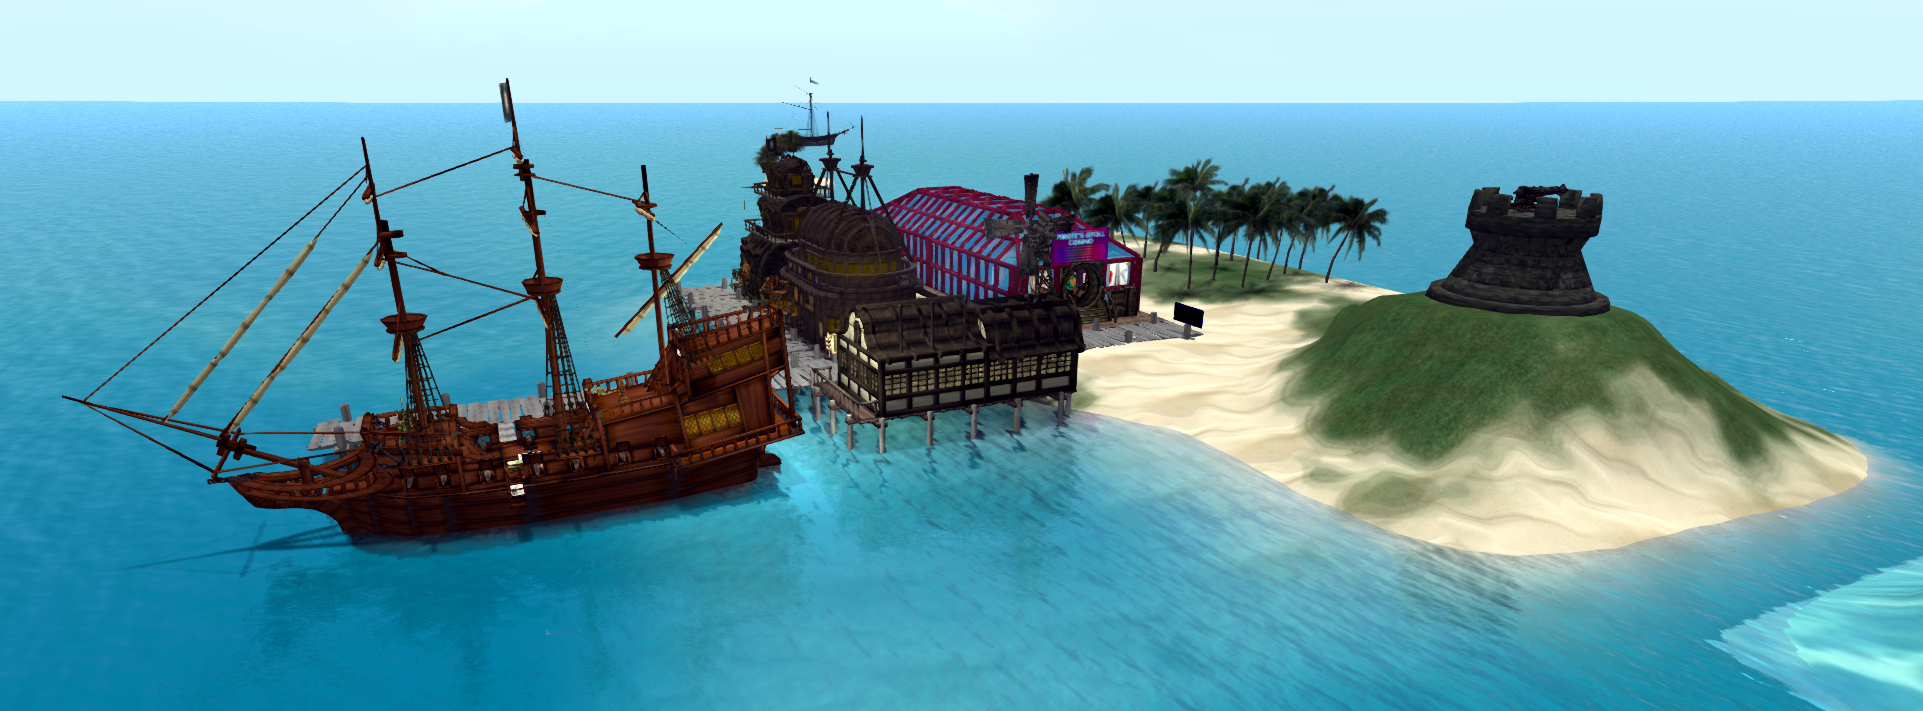 Getting Around - Pirate's Atoll